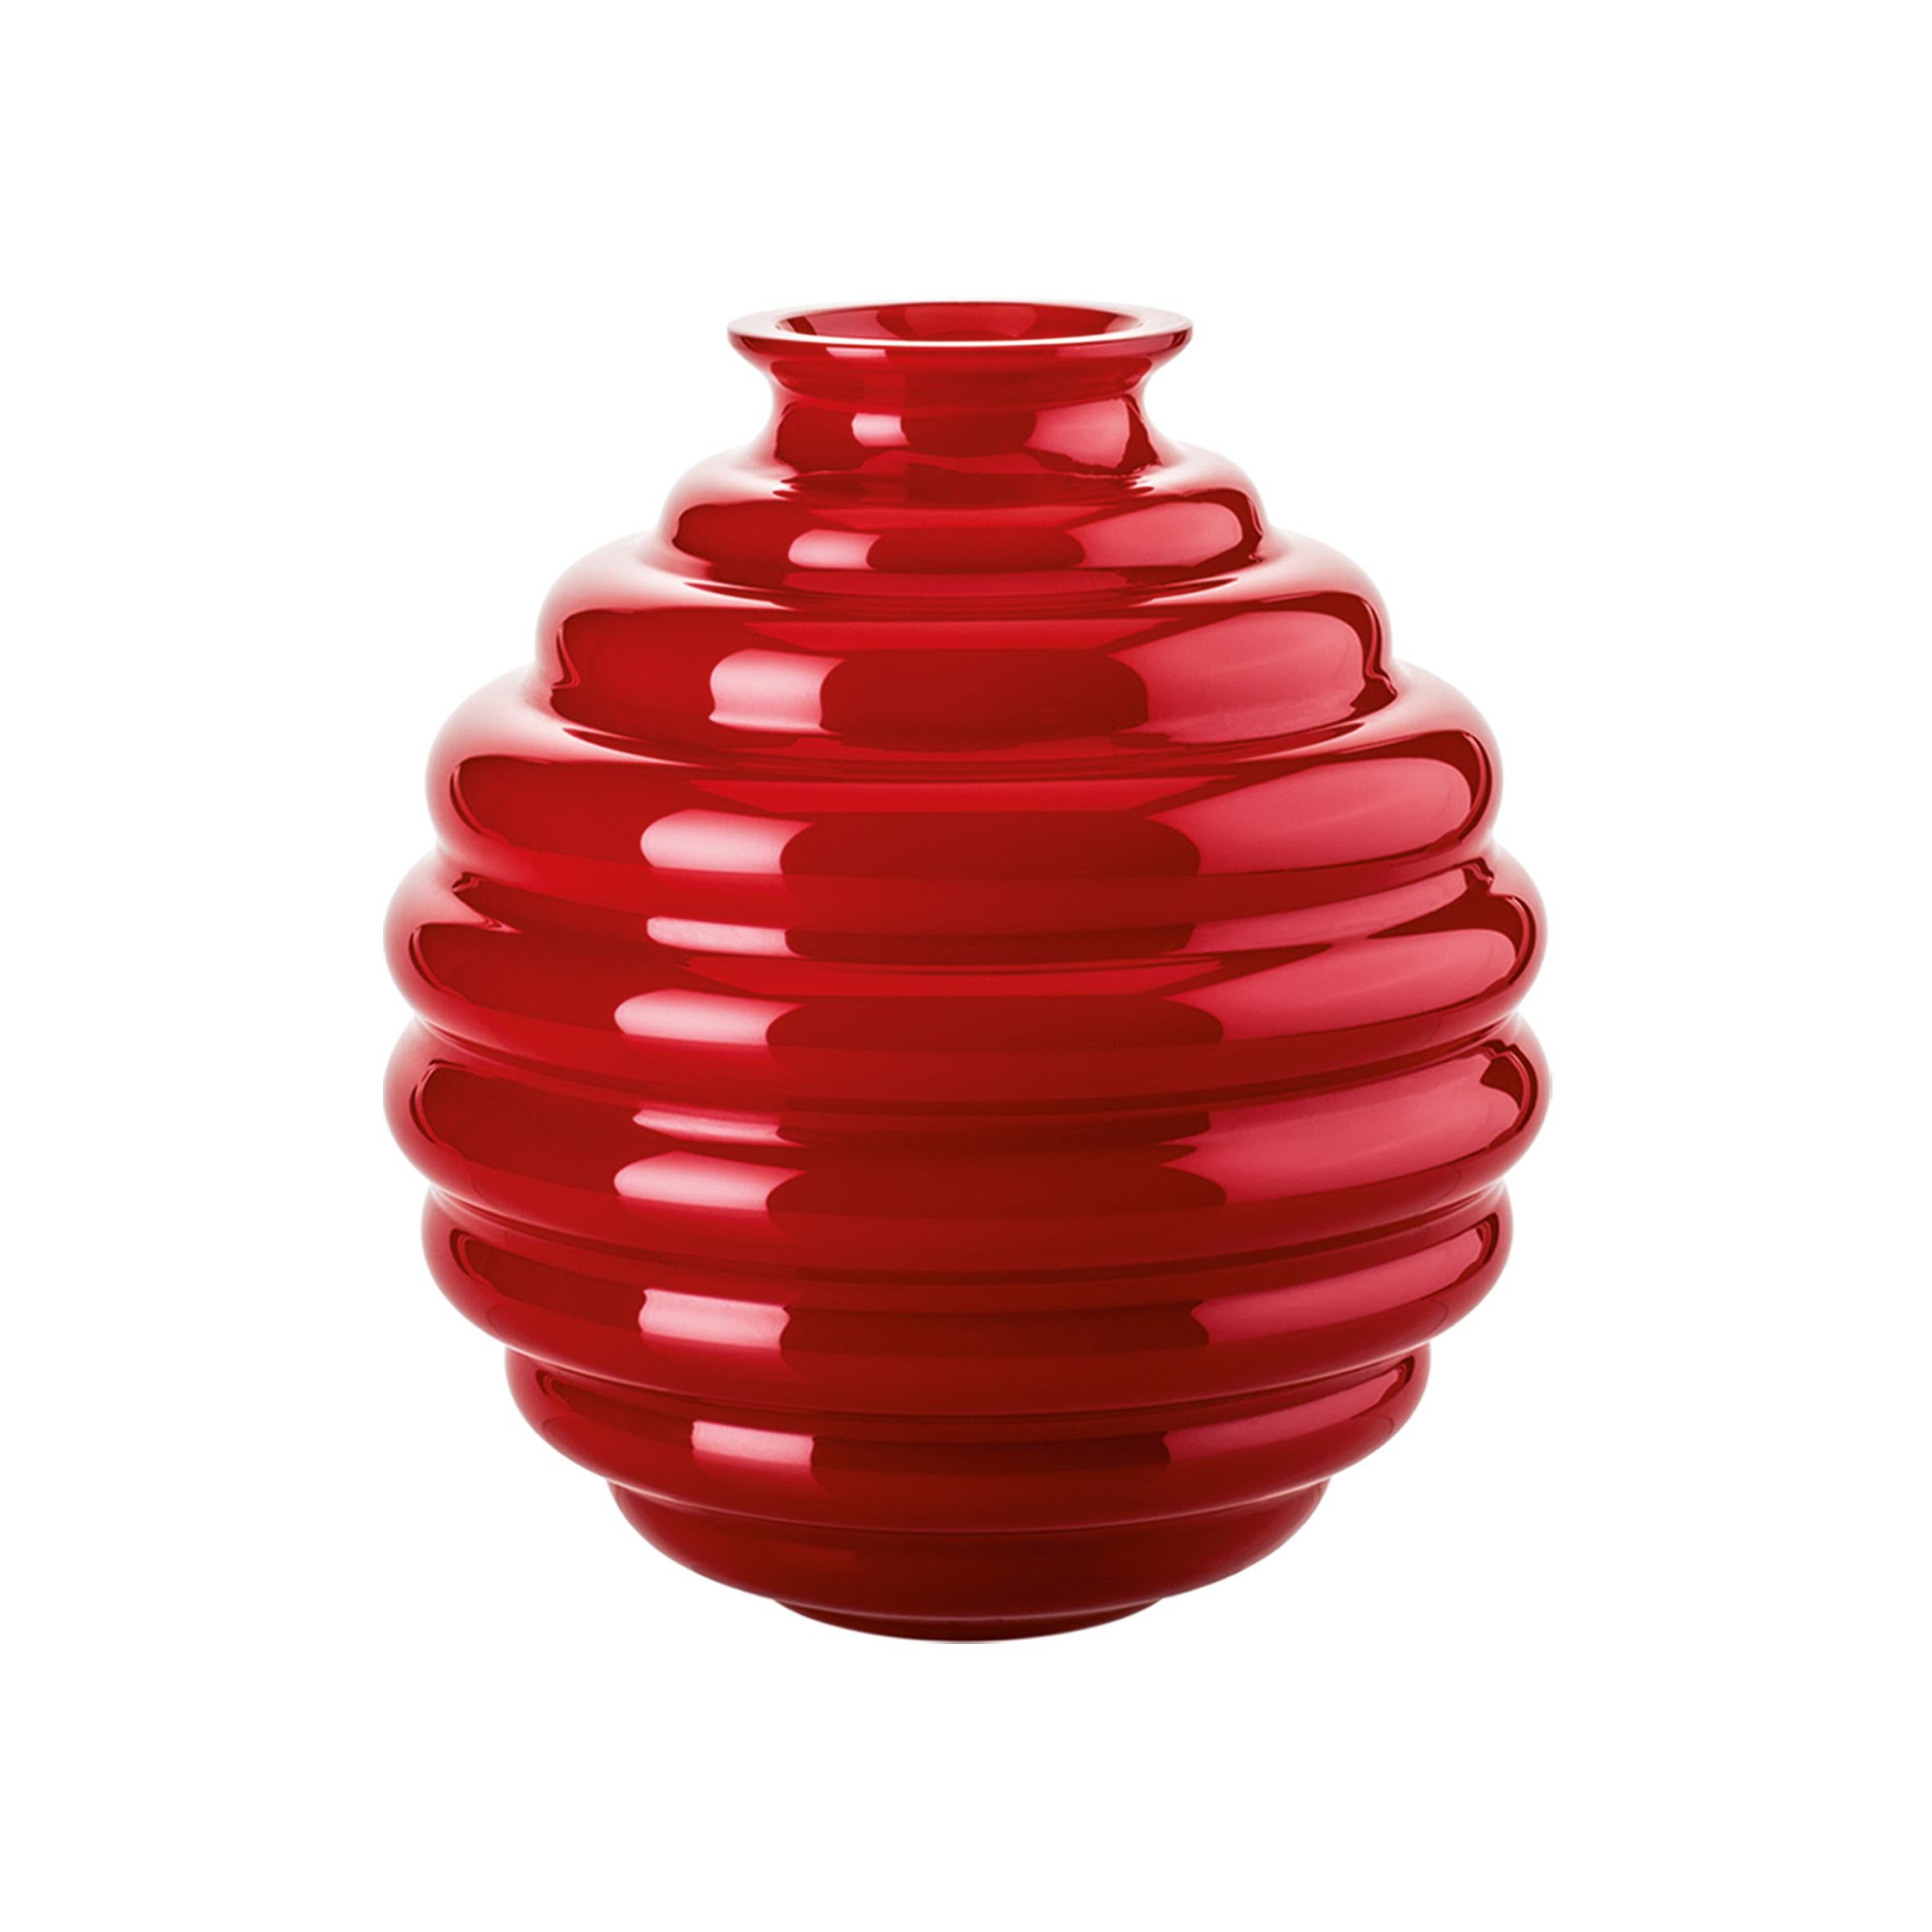 Rote Glasvase von Venini, entworfen von Napoleone Martinuzzi im Jahr 1930. Perfekt für die Innendekoration als Behälter oder Schmuckstück für jeden Raum. Auch in anderen Farben auf 1stdibs erhältlich.

Abmessungen: 26 cm Durchmesser x 29 cm Höhe.